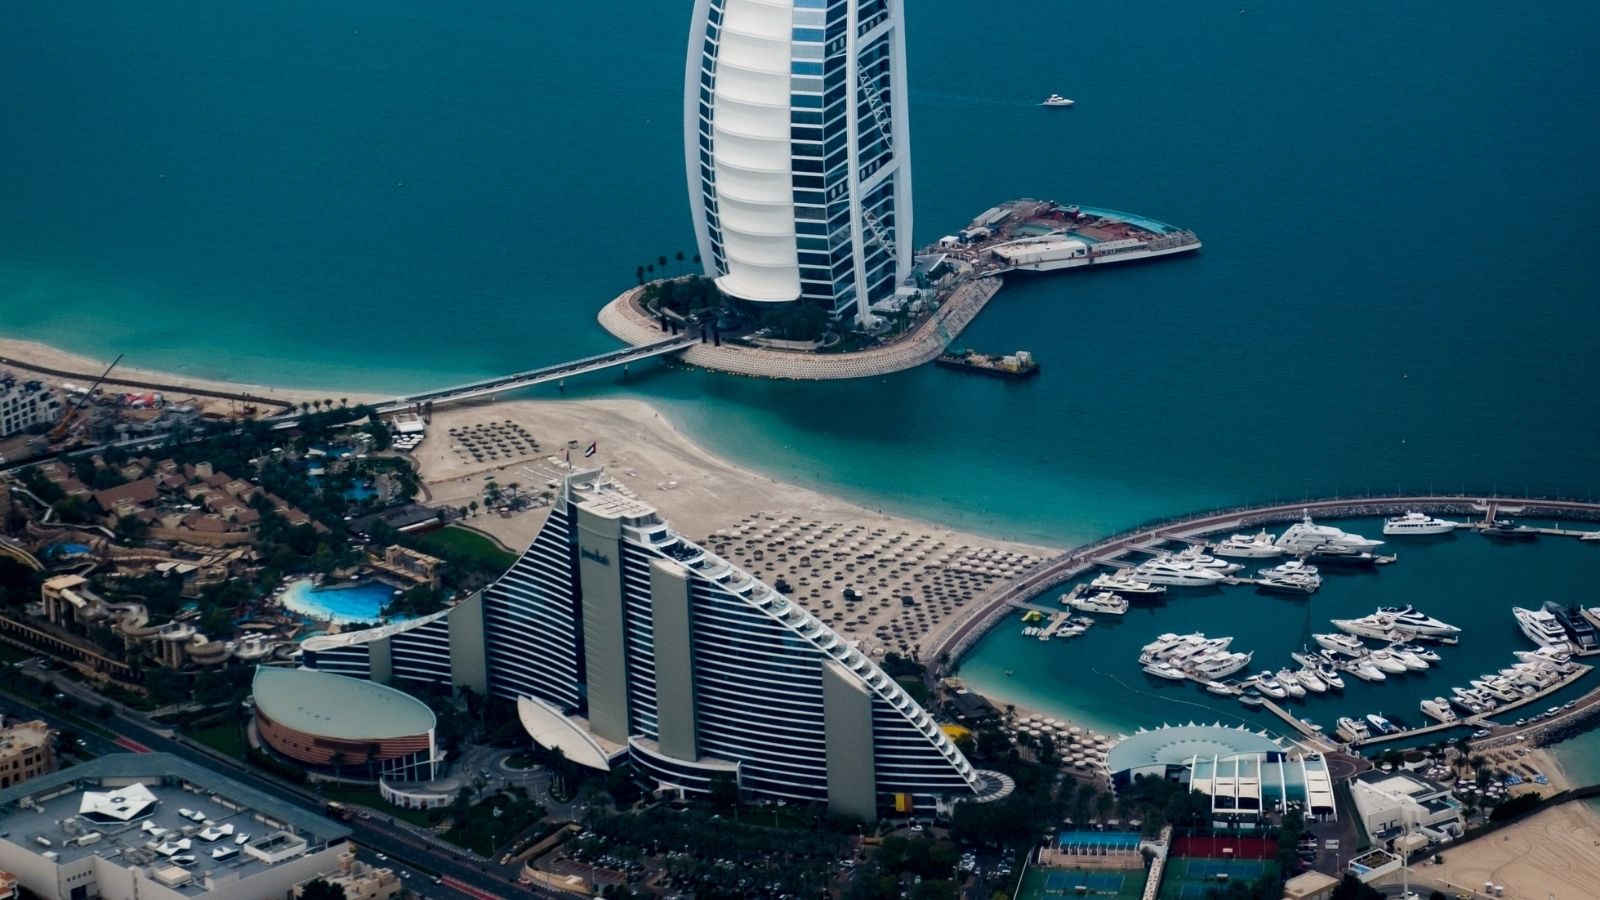 افخم فنادق دبي